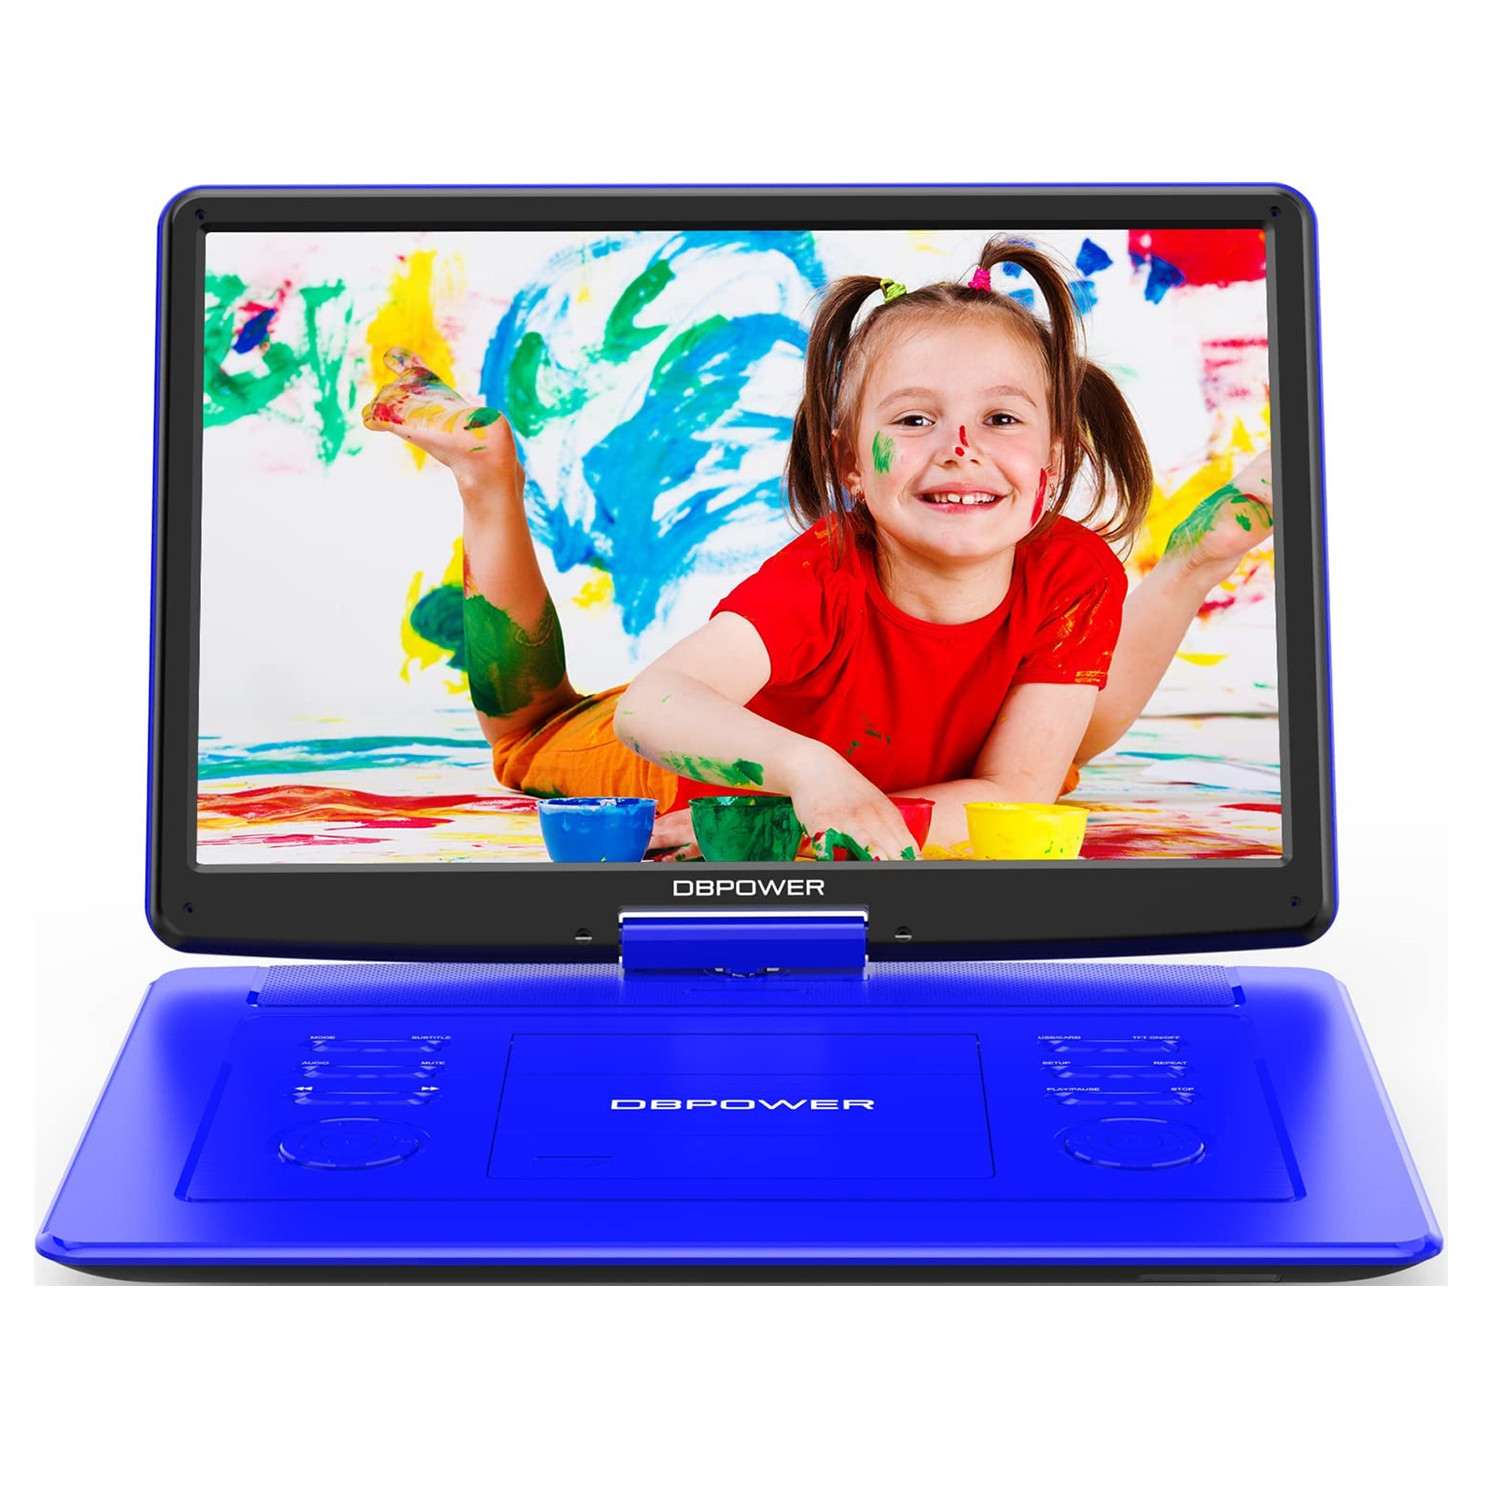 DBPOWER Reproductor de DVD portátil para automóvil con pantalla giratoria grande de 15,6 pulgadas, batería recargable de 6 horas, compatible con DVD/CD/tarjeta USB/SD y otros formatos de disco múltiples Sincronización de TV Azul